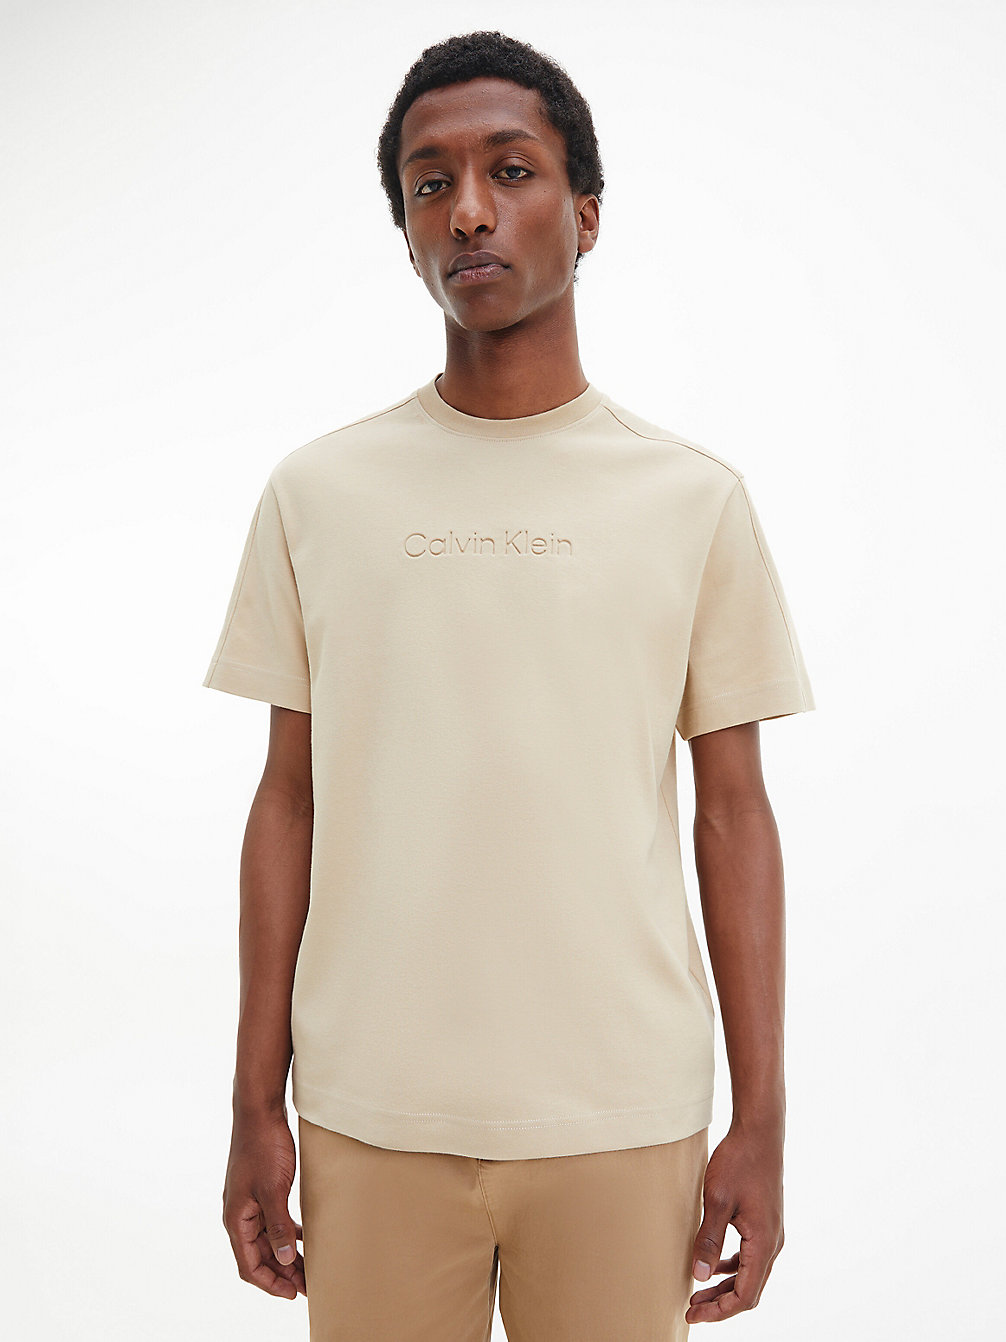 TRAVERTINE > Relaxtes T-Shirt Aus Bio-Baumwolle > undefined Herren - Calvin Klein